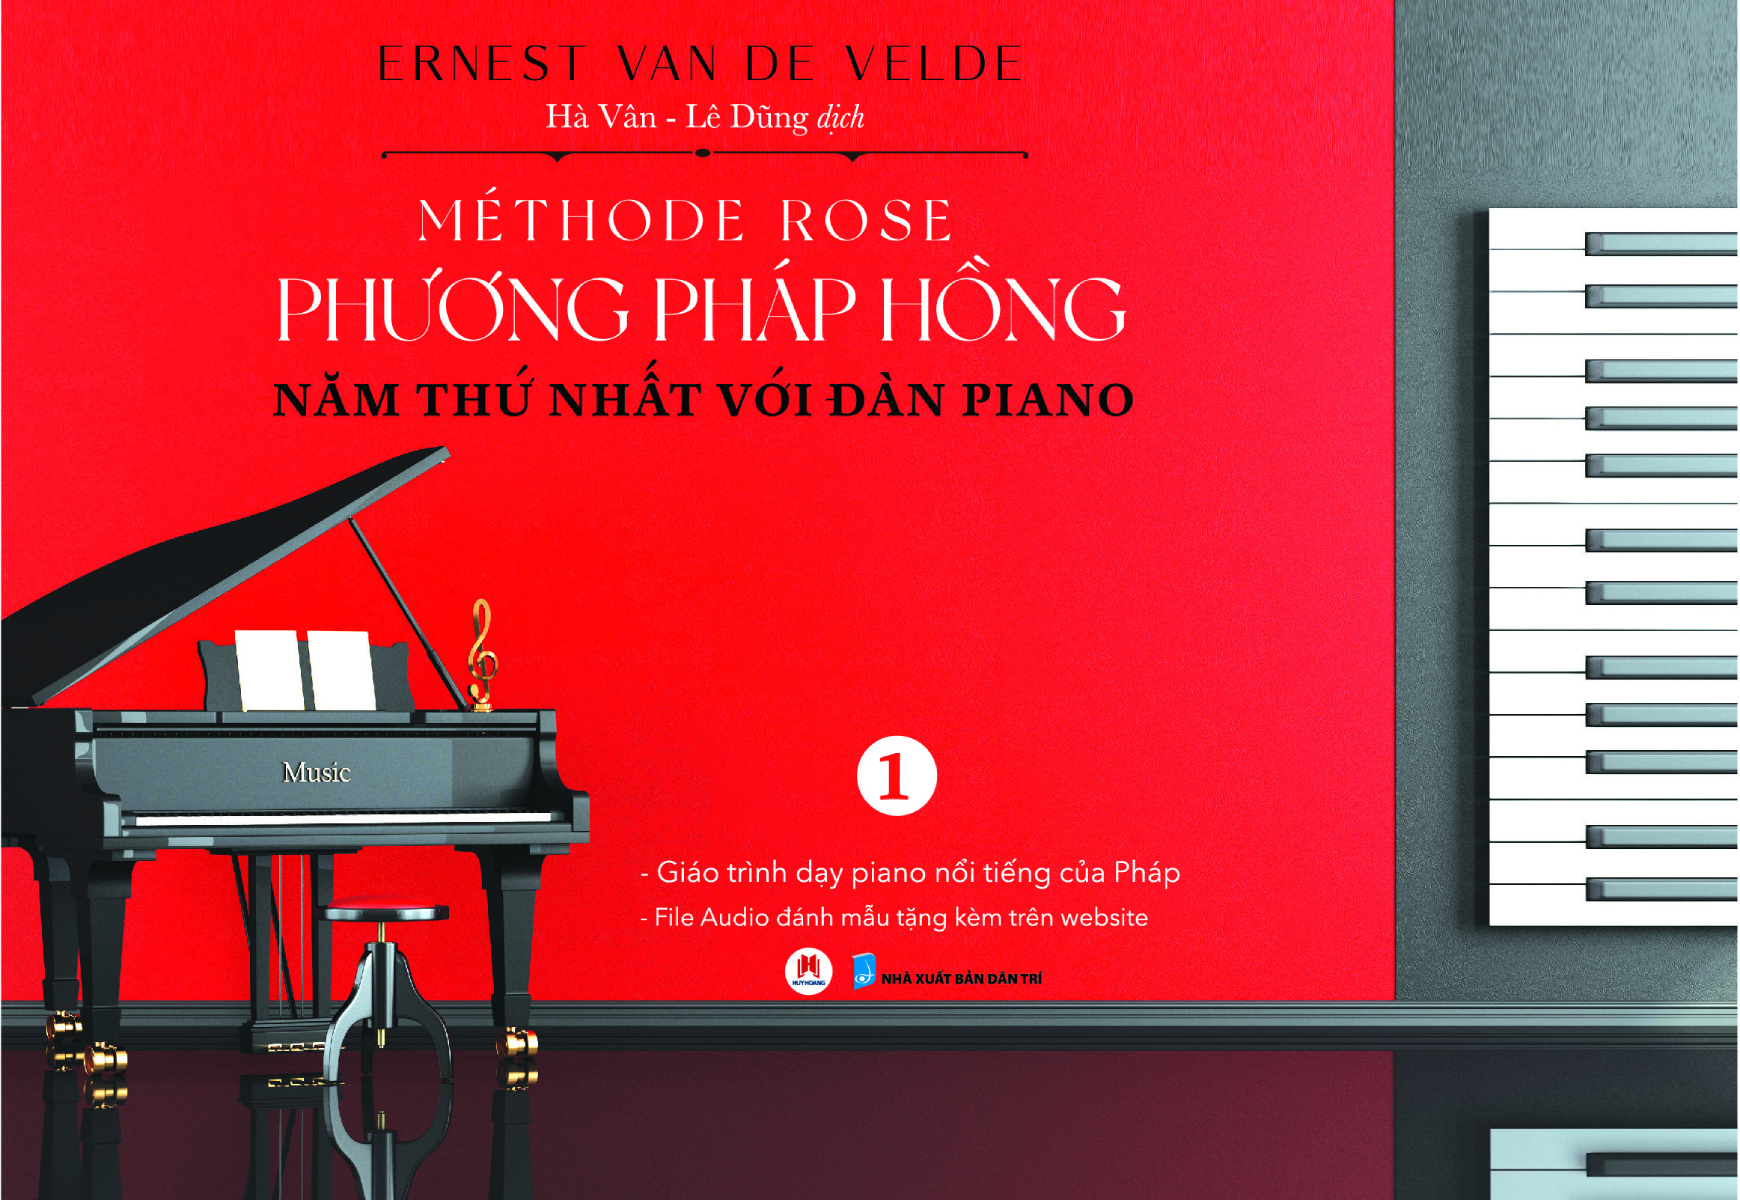 Phương Pháp Hồng - Năm Thứ Nhất Với Đàn Piano